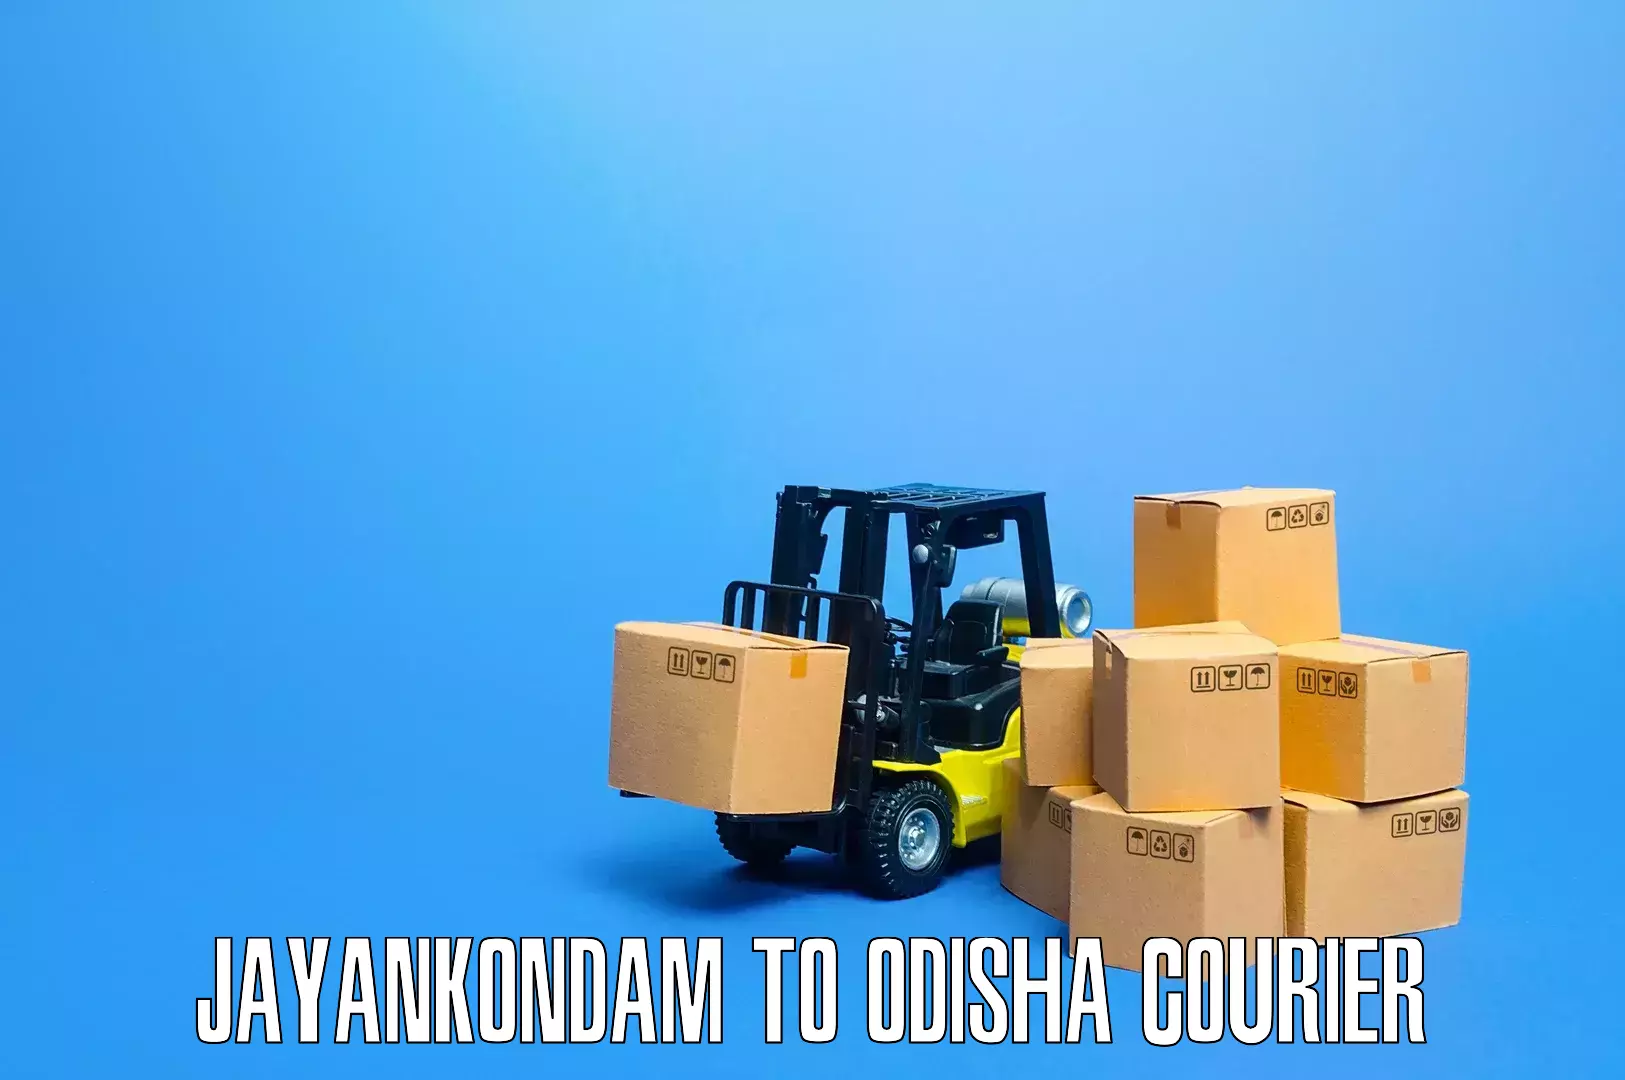 Efficient household moving Jayankondam to Jaraka